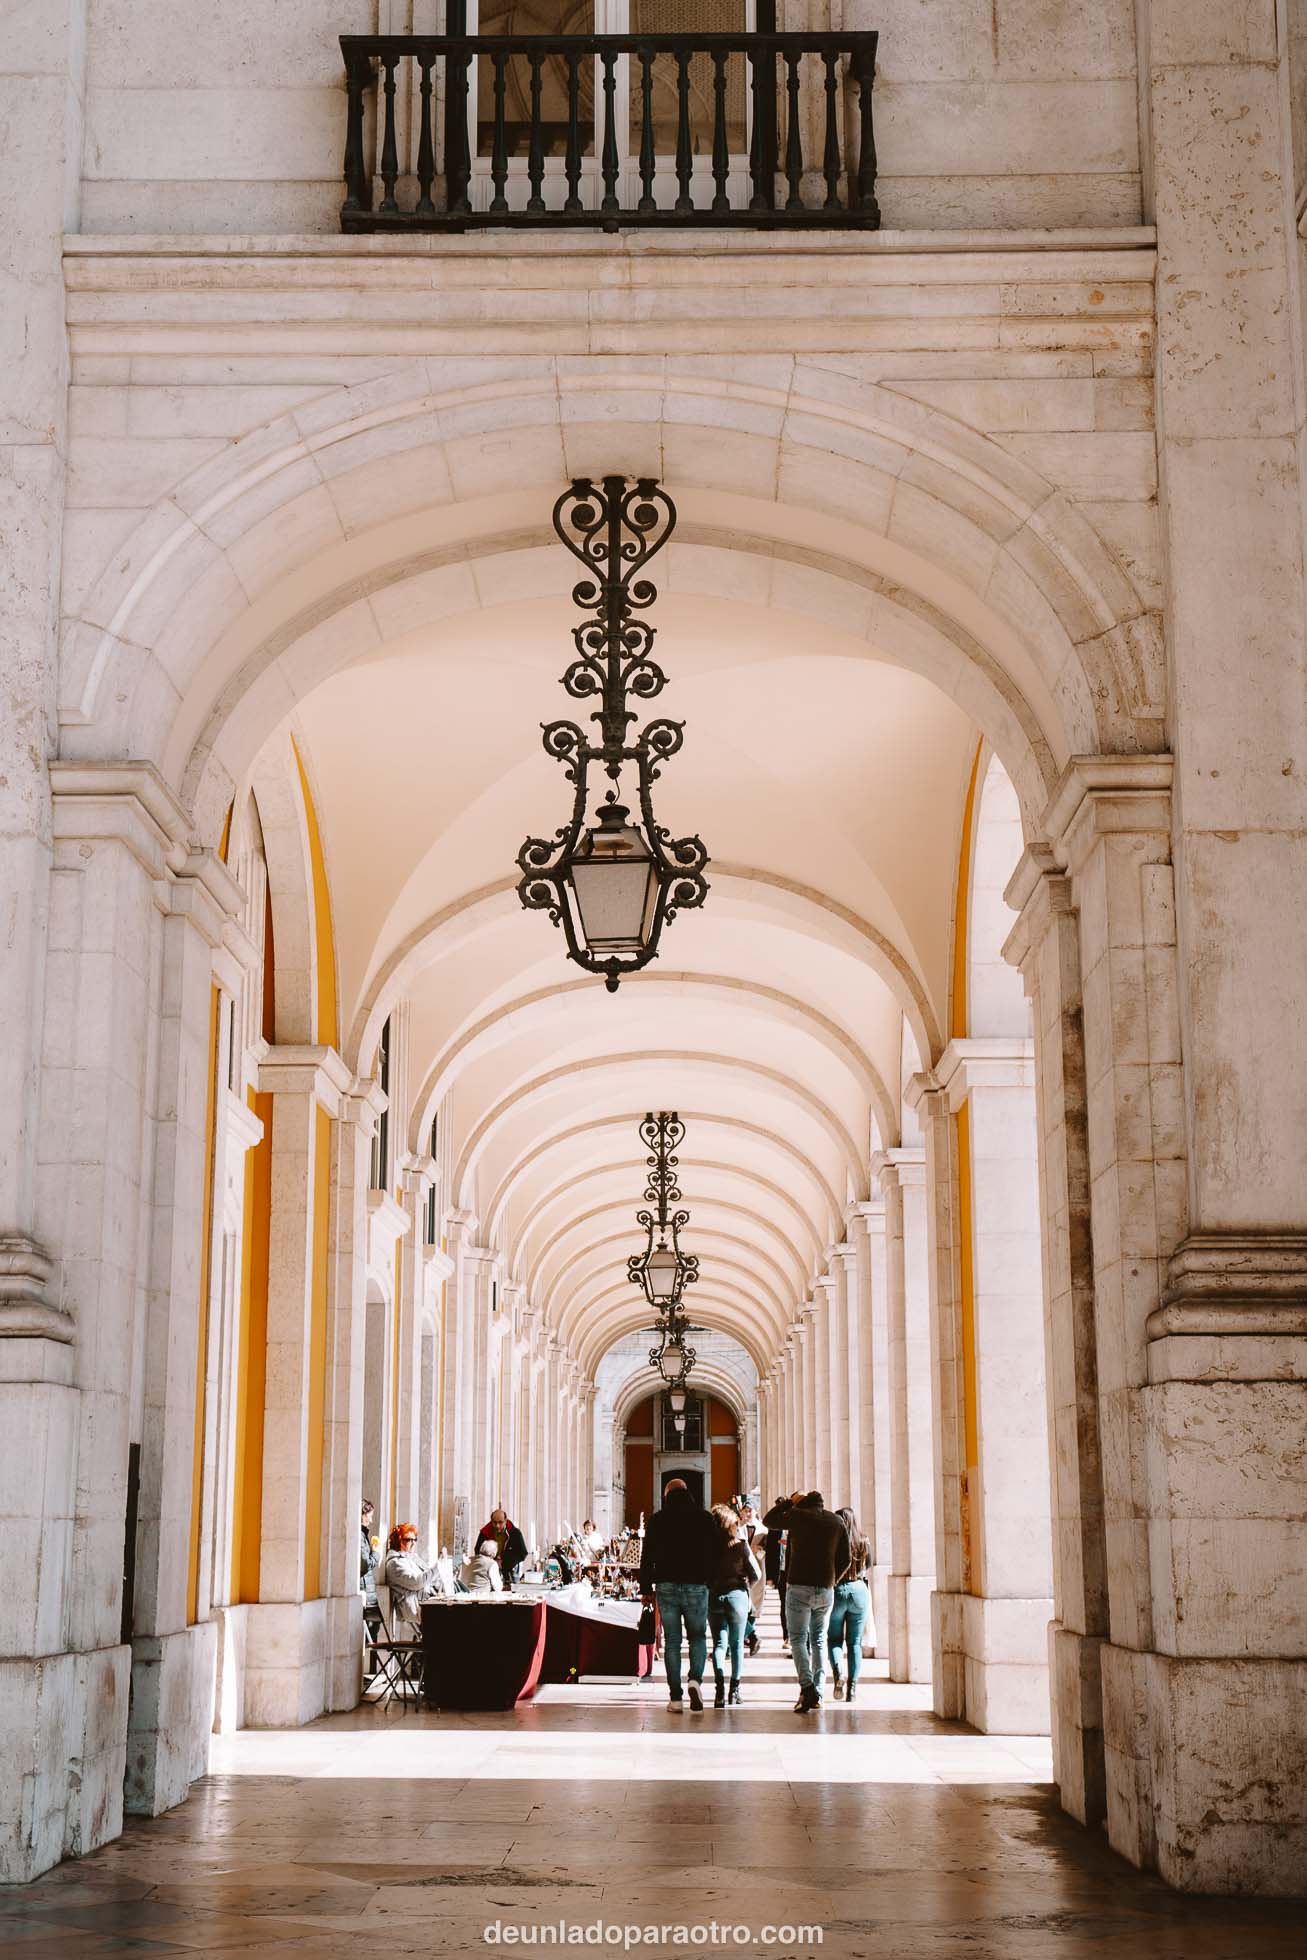 Una de las plazas más emblemáticas que ver en Lisboa